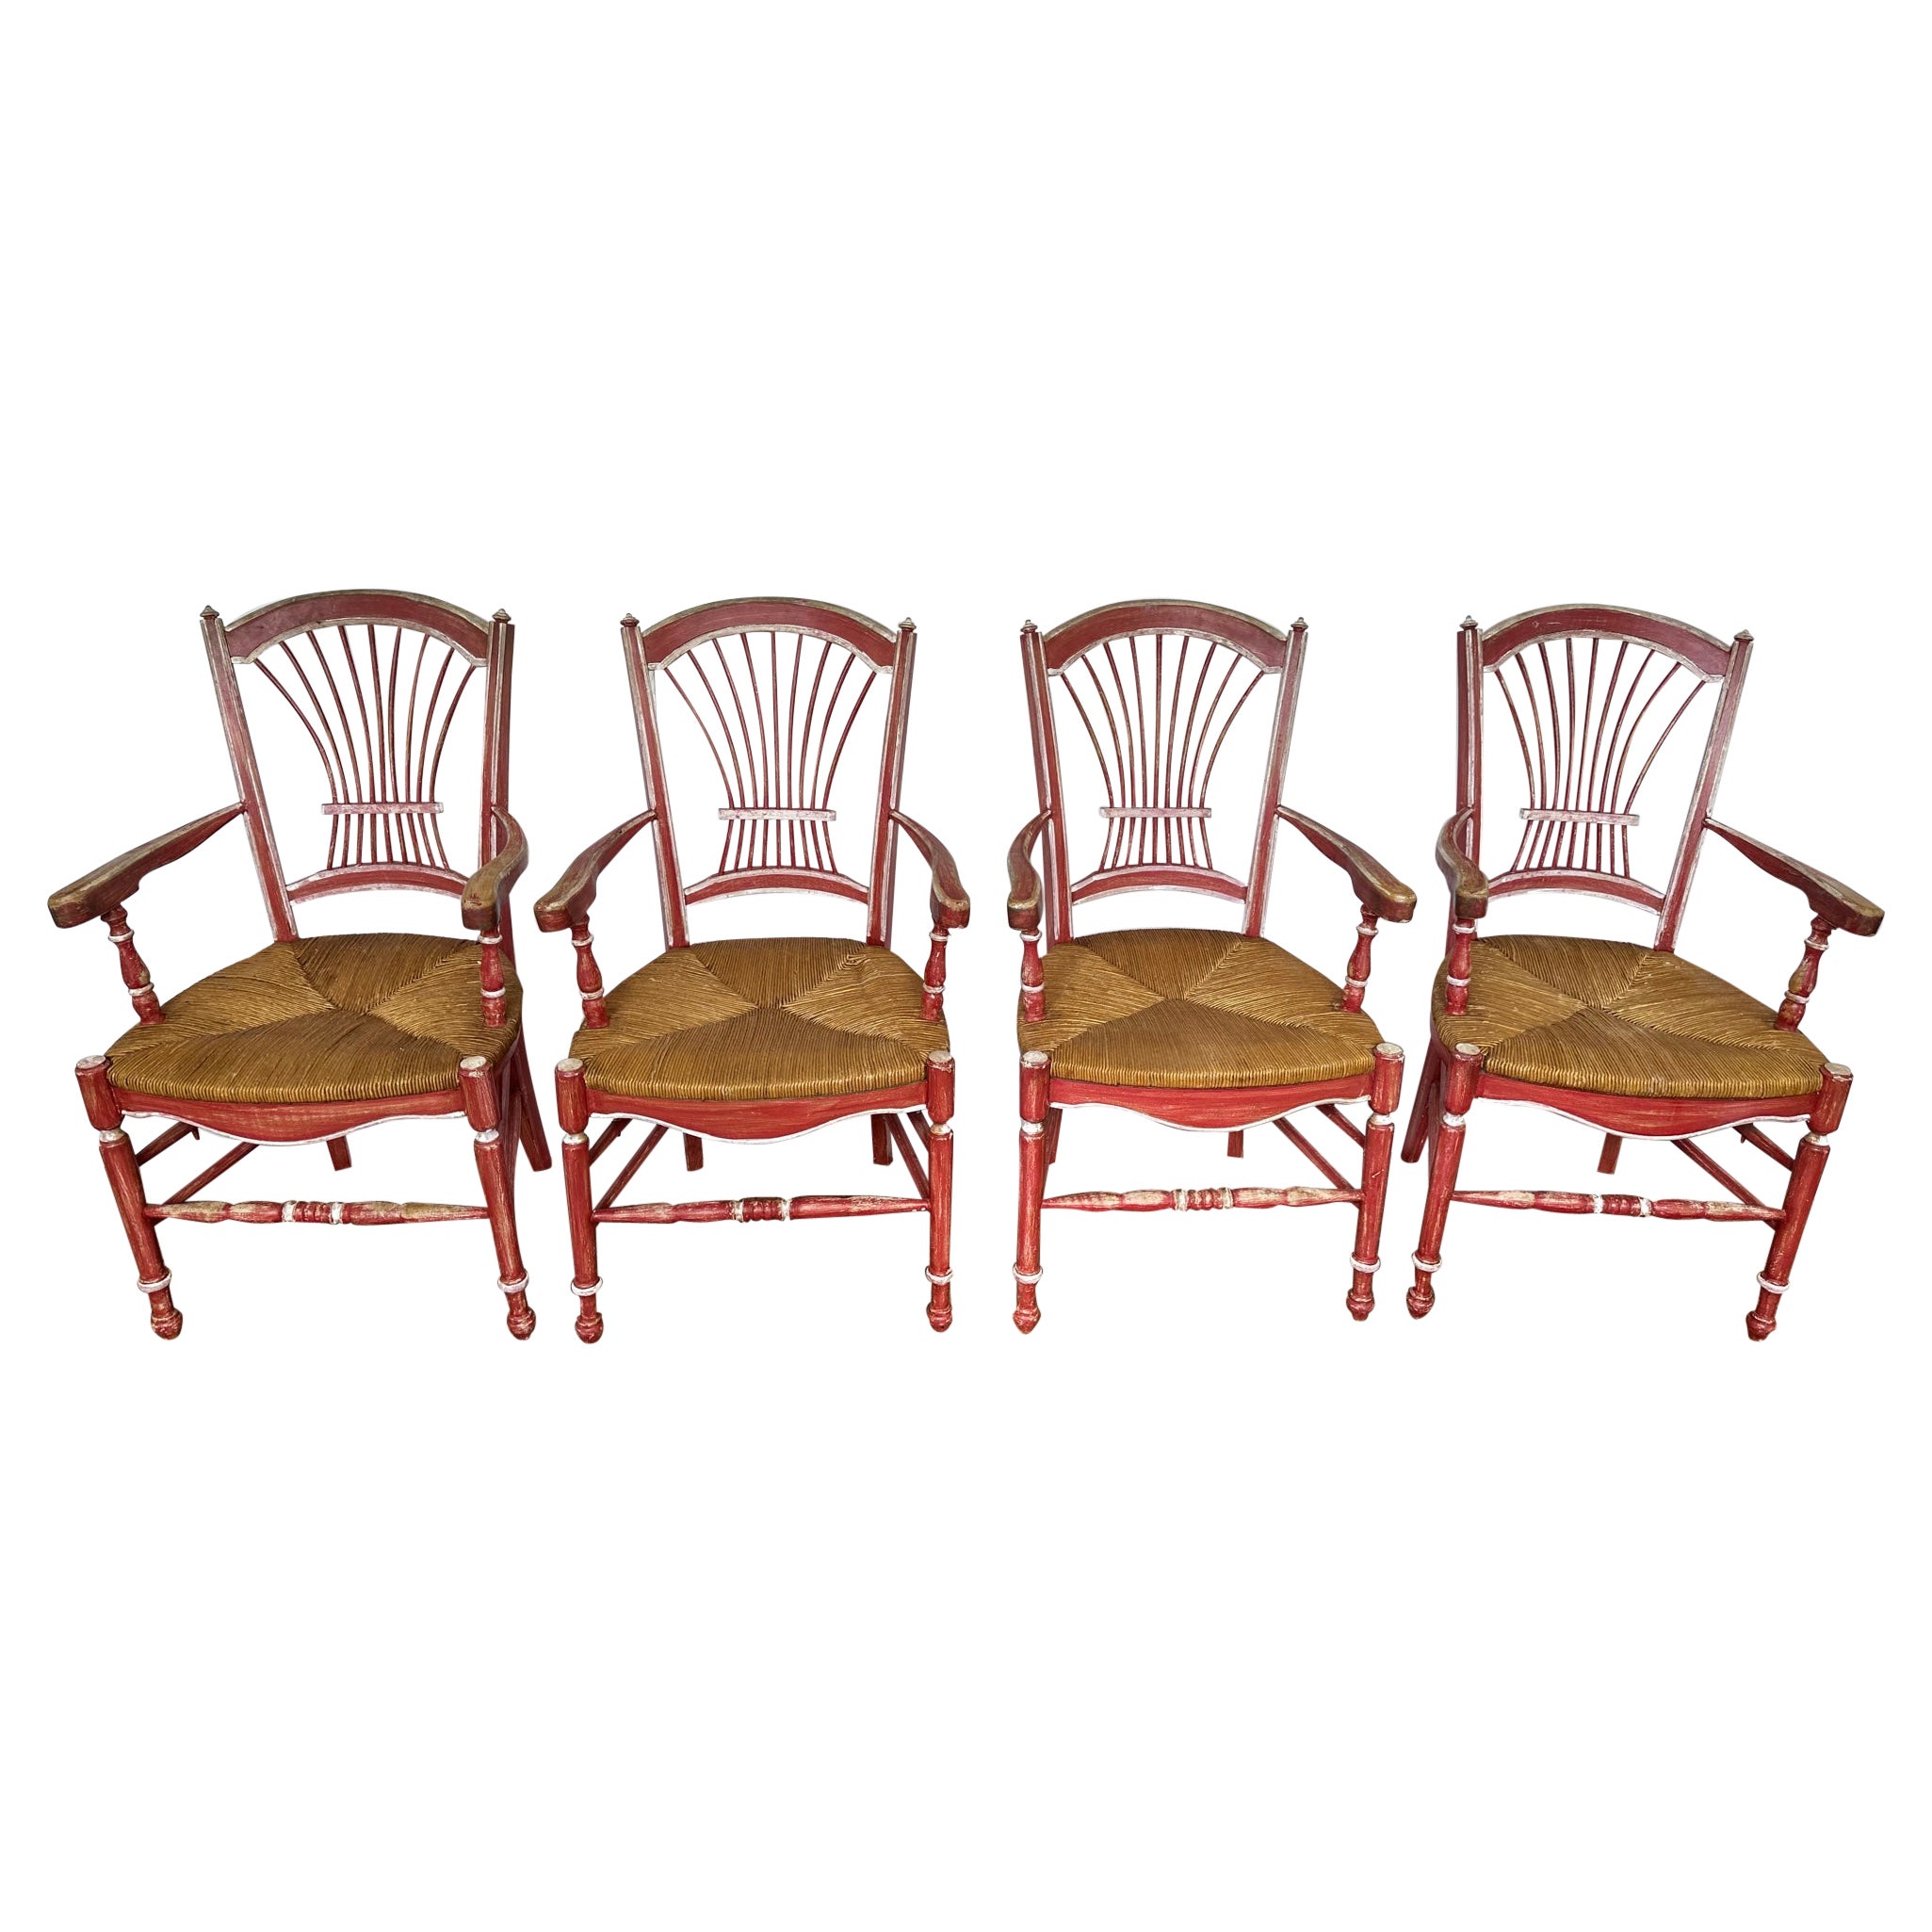 Ensemble de 4 chaises de salle à manger Vintage French Country peintes en rouge avec sièges en joncs